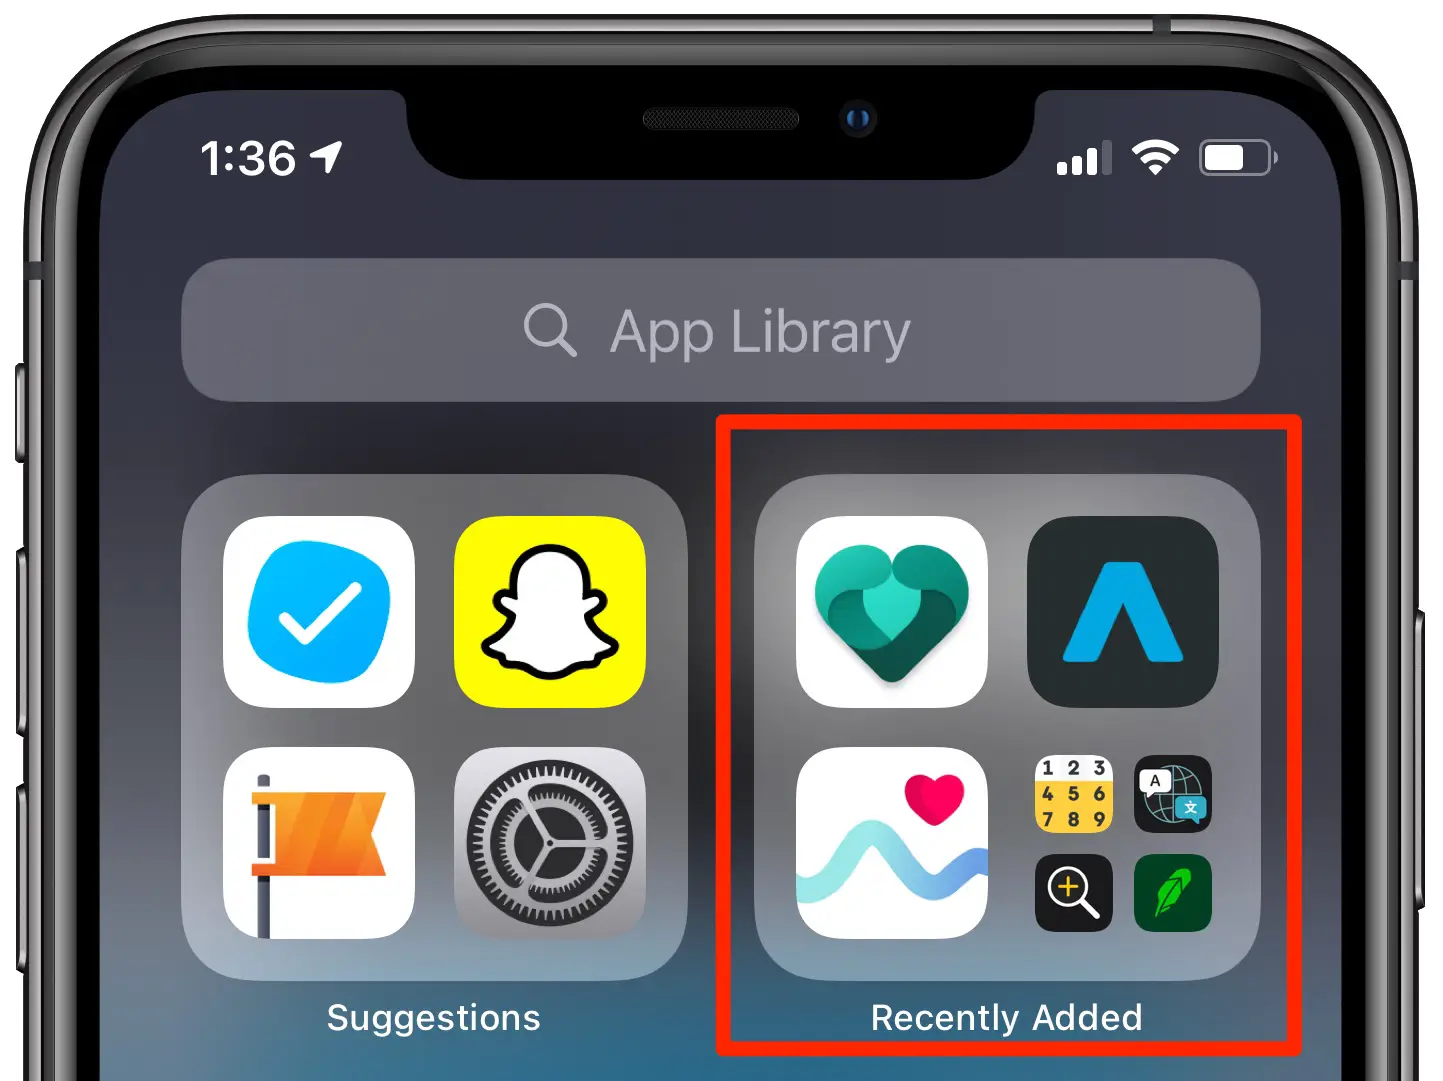 App iPhone installate di recente - Libreria app con evidenziata la cartella Aggiunte di recente